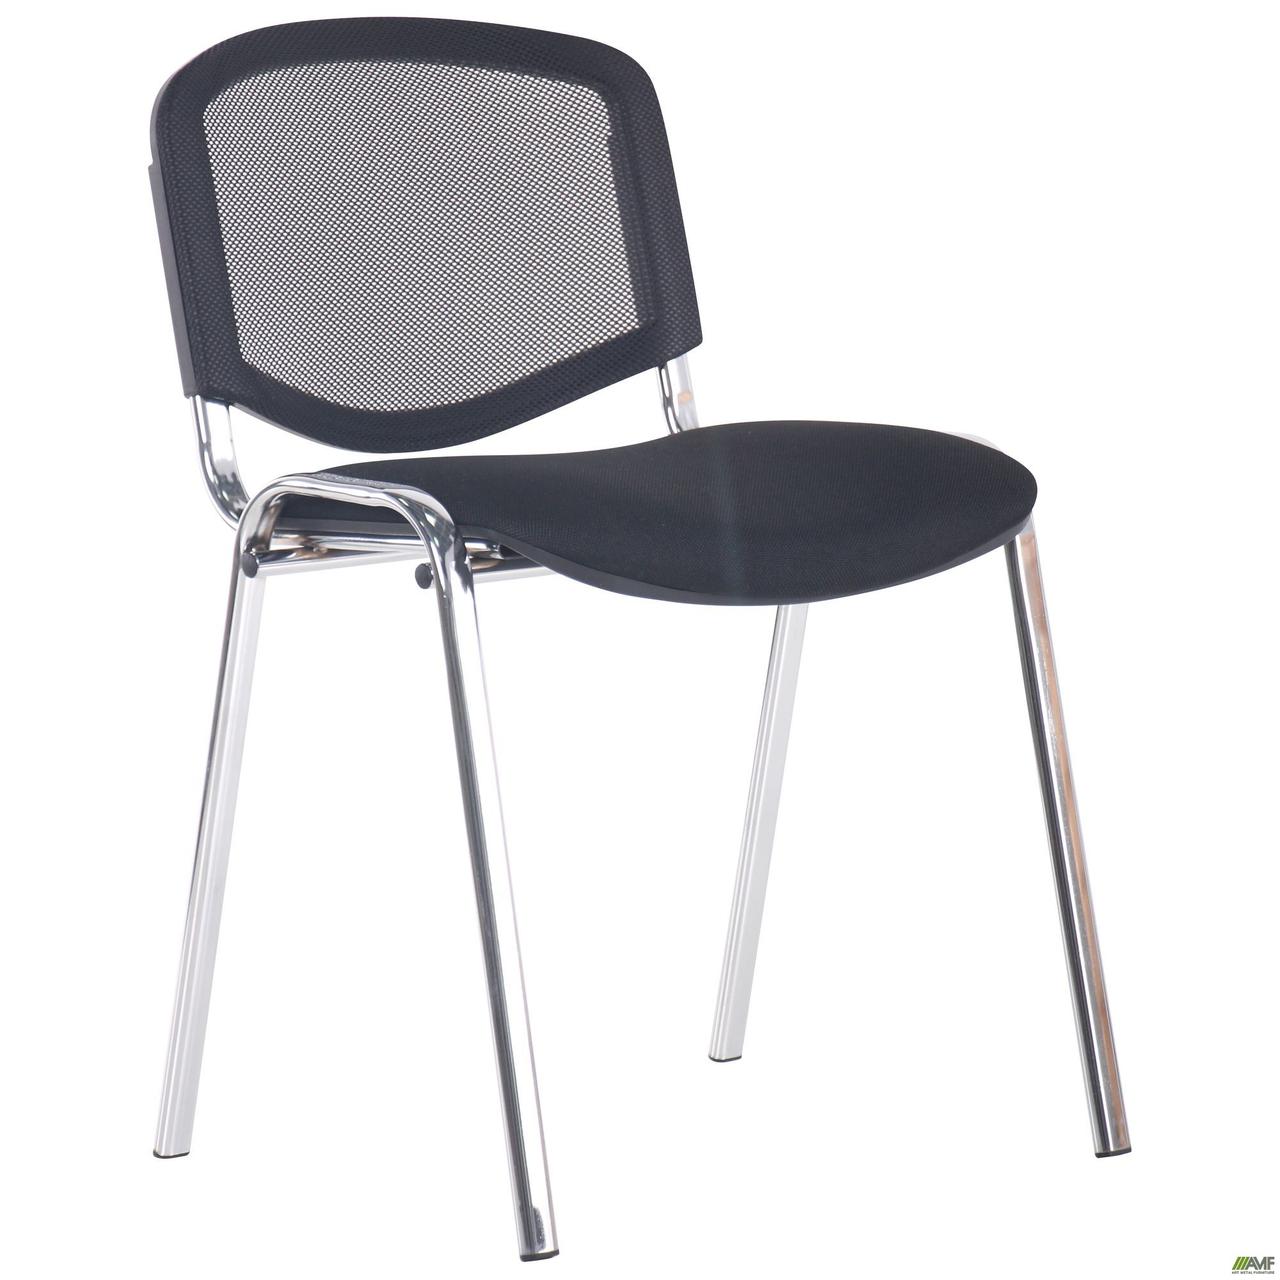 Офісний стілець АМФ З Веб спинка сітка чорна металокаркас хром